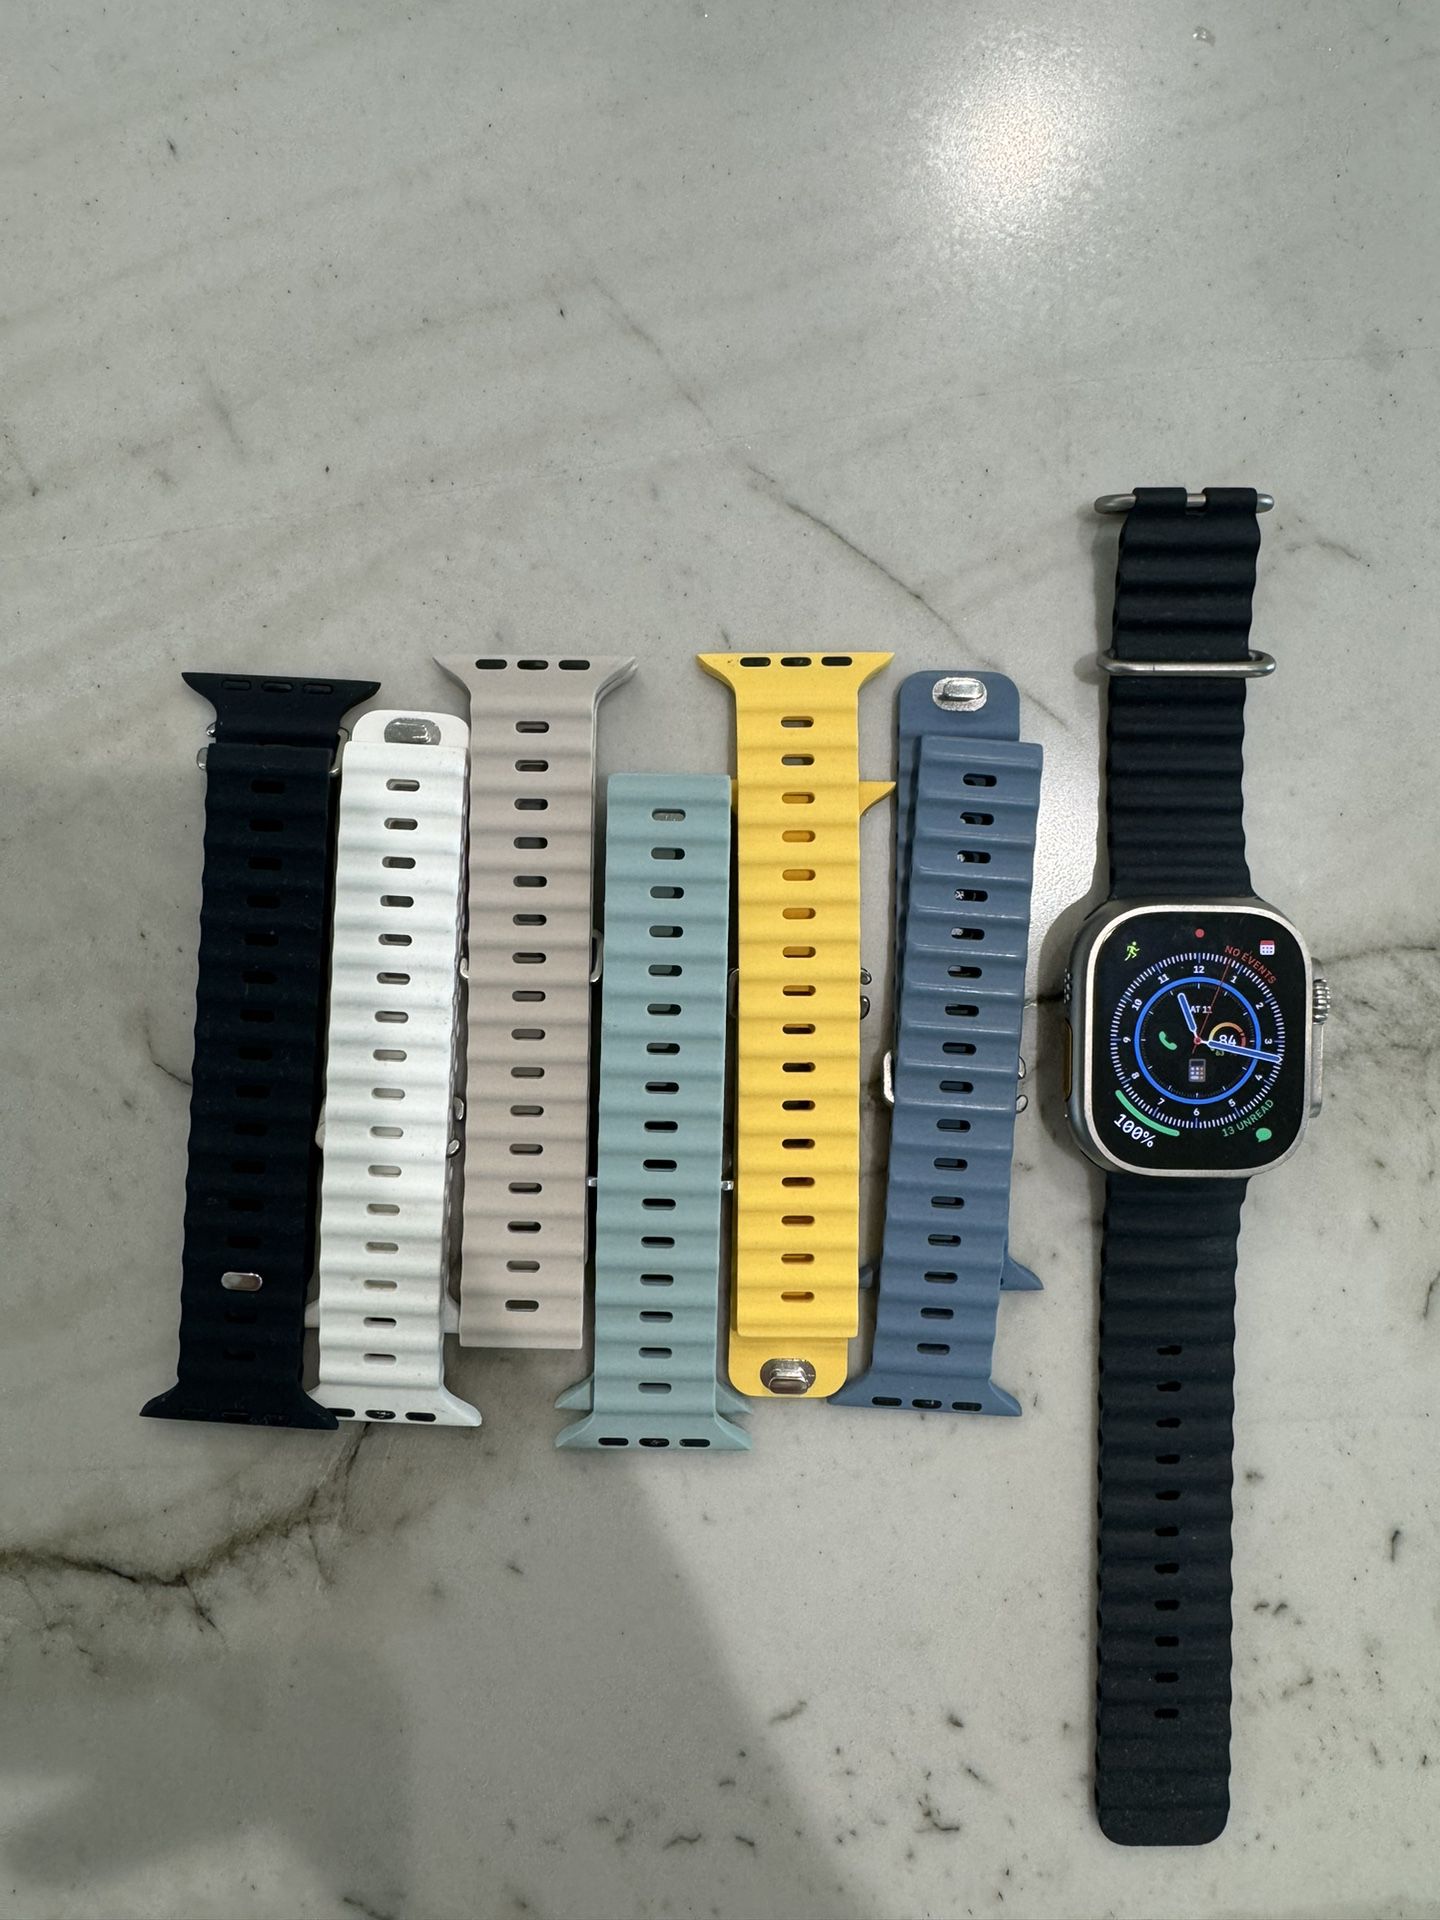 Ultra Apple Watch 